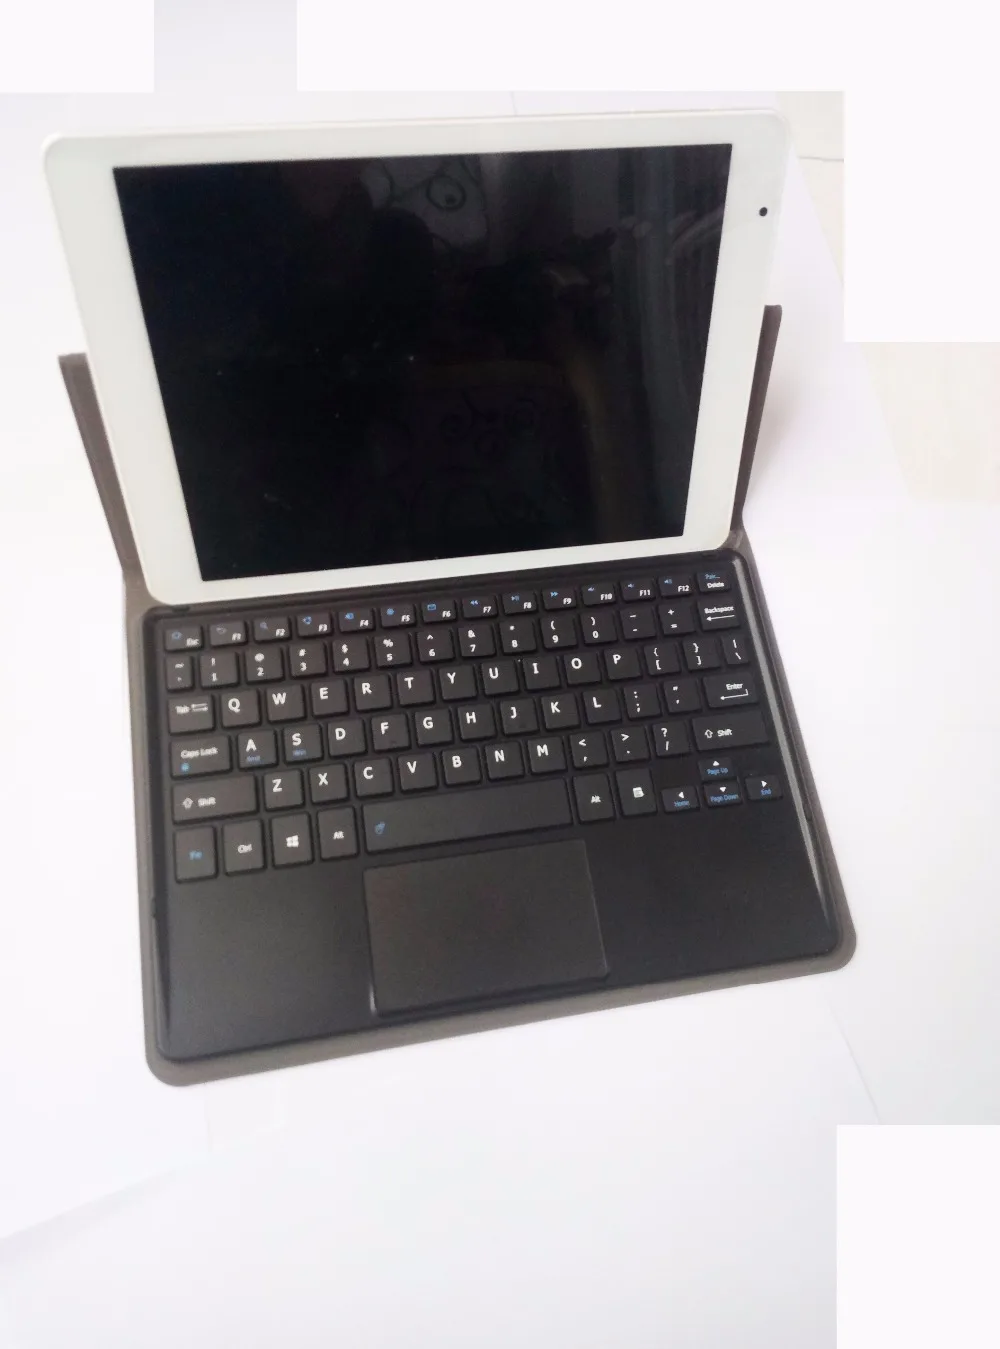 Корпус клавиатуры с сенсорной панелью для Chuwi VI10 двойной загрузки Tablet PC Chuwi VI10 64 ГБ чехол клавиатура Chuwi vi10pro